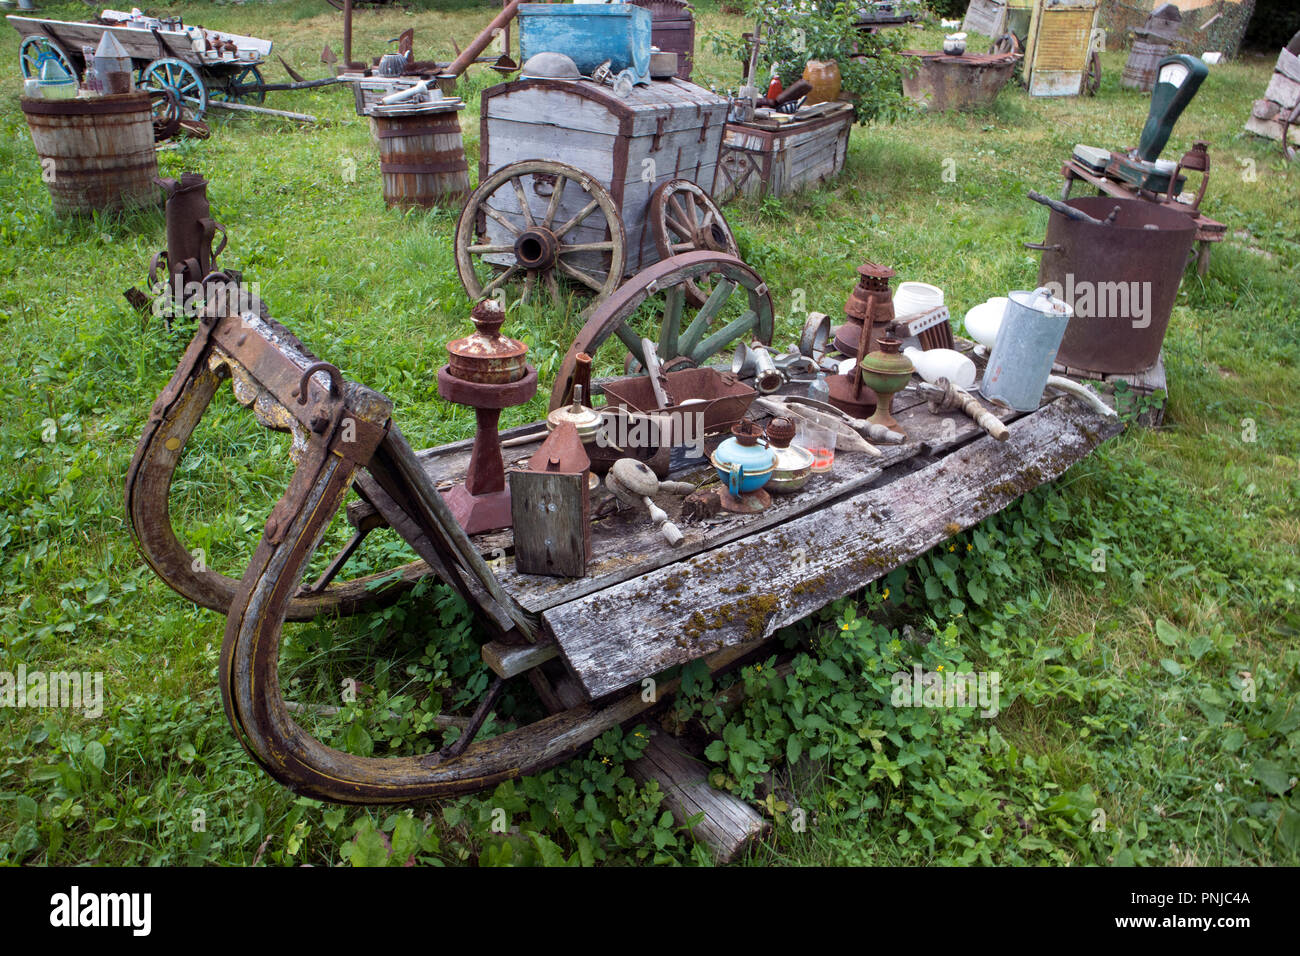 Open Air Museum di vecchie cose inutili, antichi spazzatura indesiderati nella vecchia carrozza aperta Foto Stock